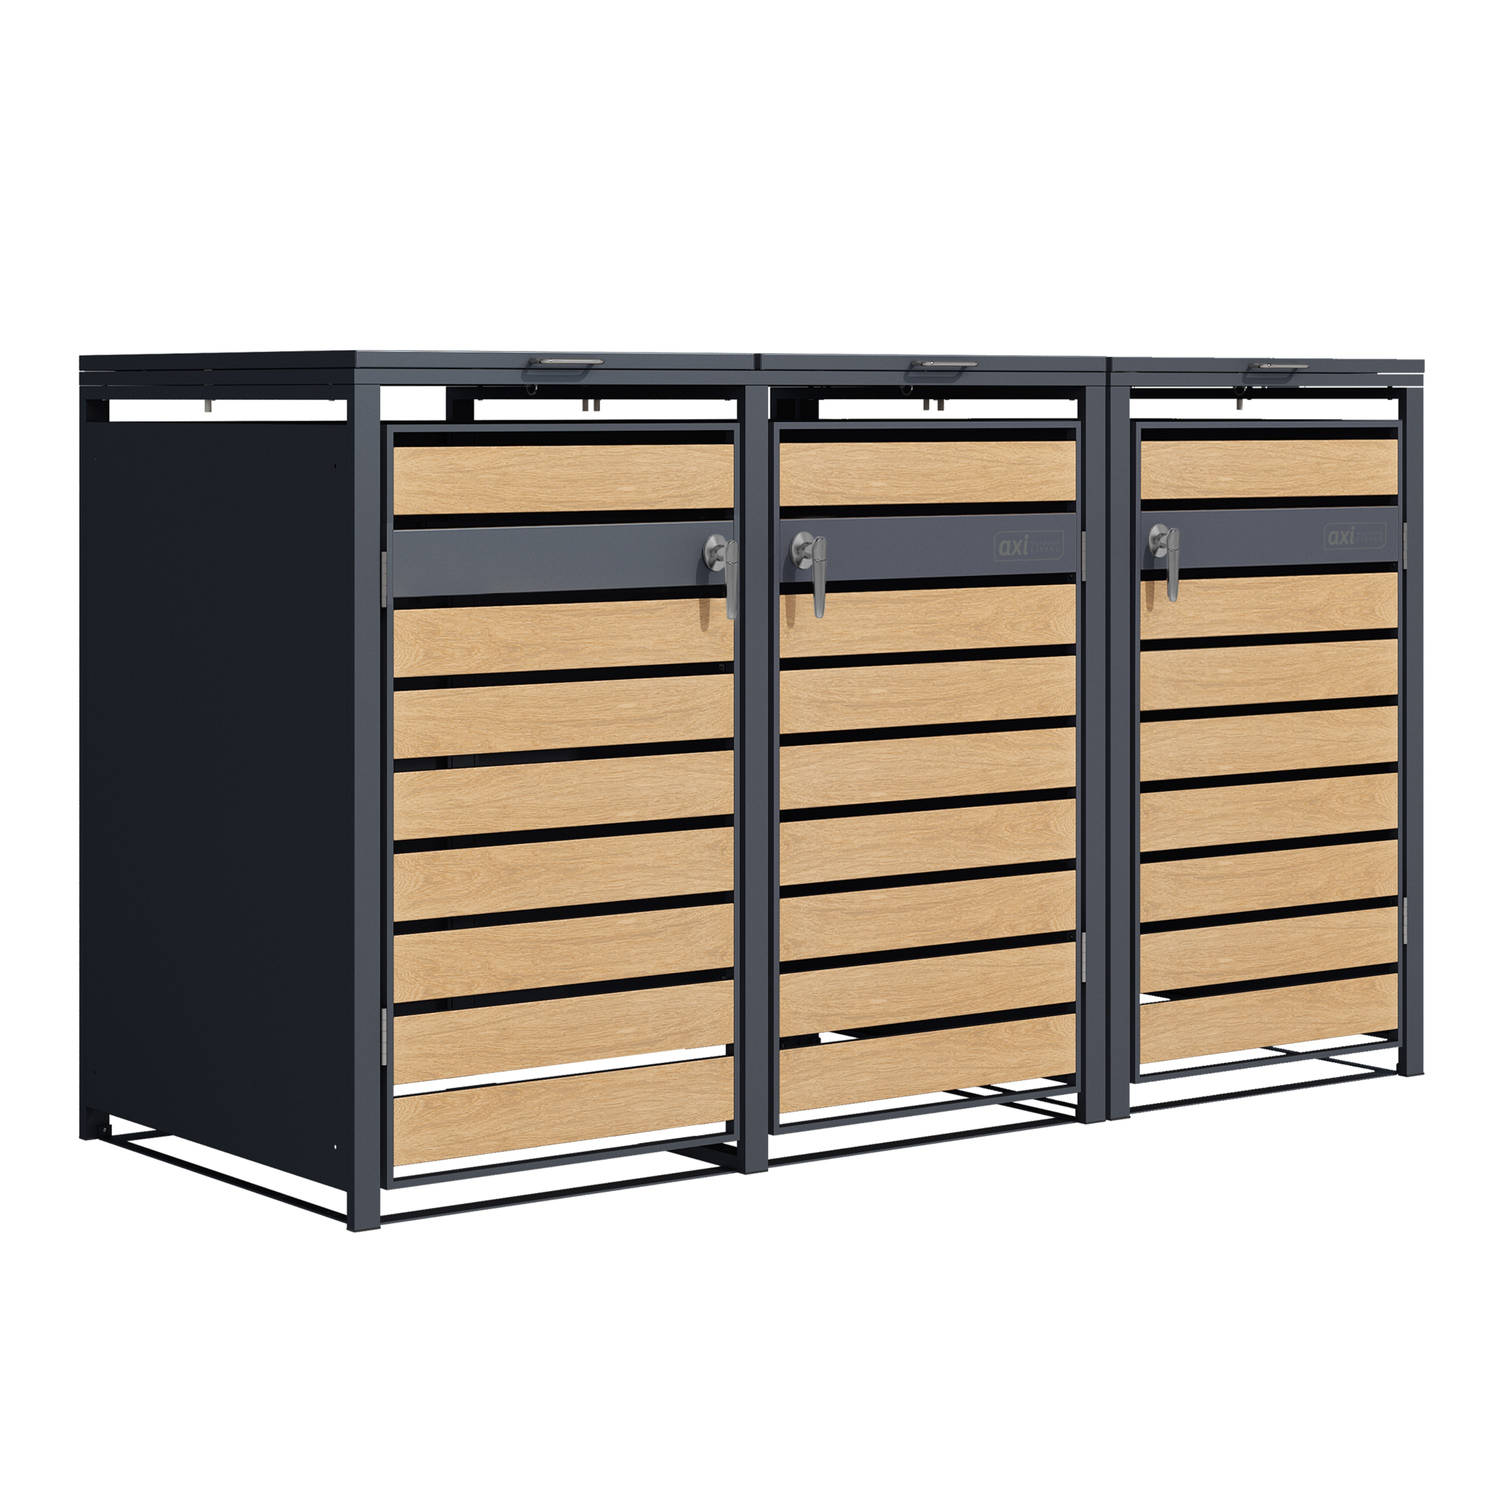 AXI Lucas metalen Containerombouw Antraciet/houtlook - Kliko ombouw voor 3 afvalcontainers – Max. 240L – Goede ventilatie